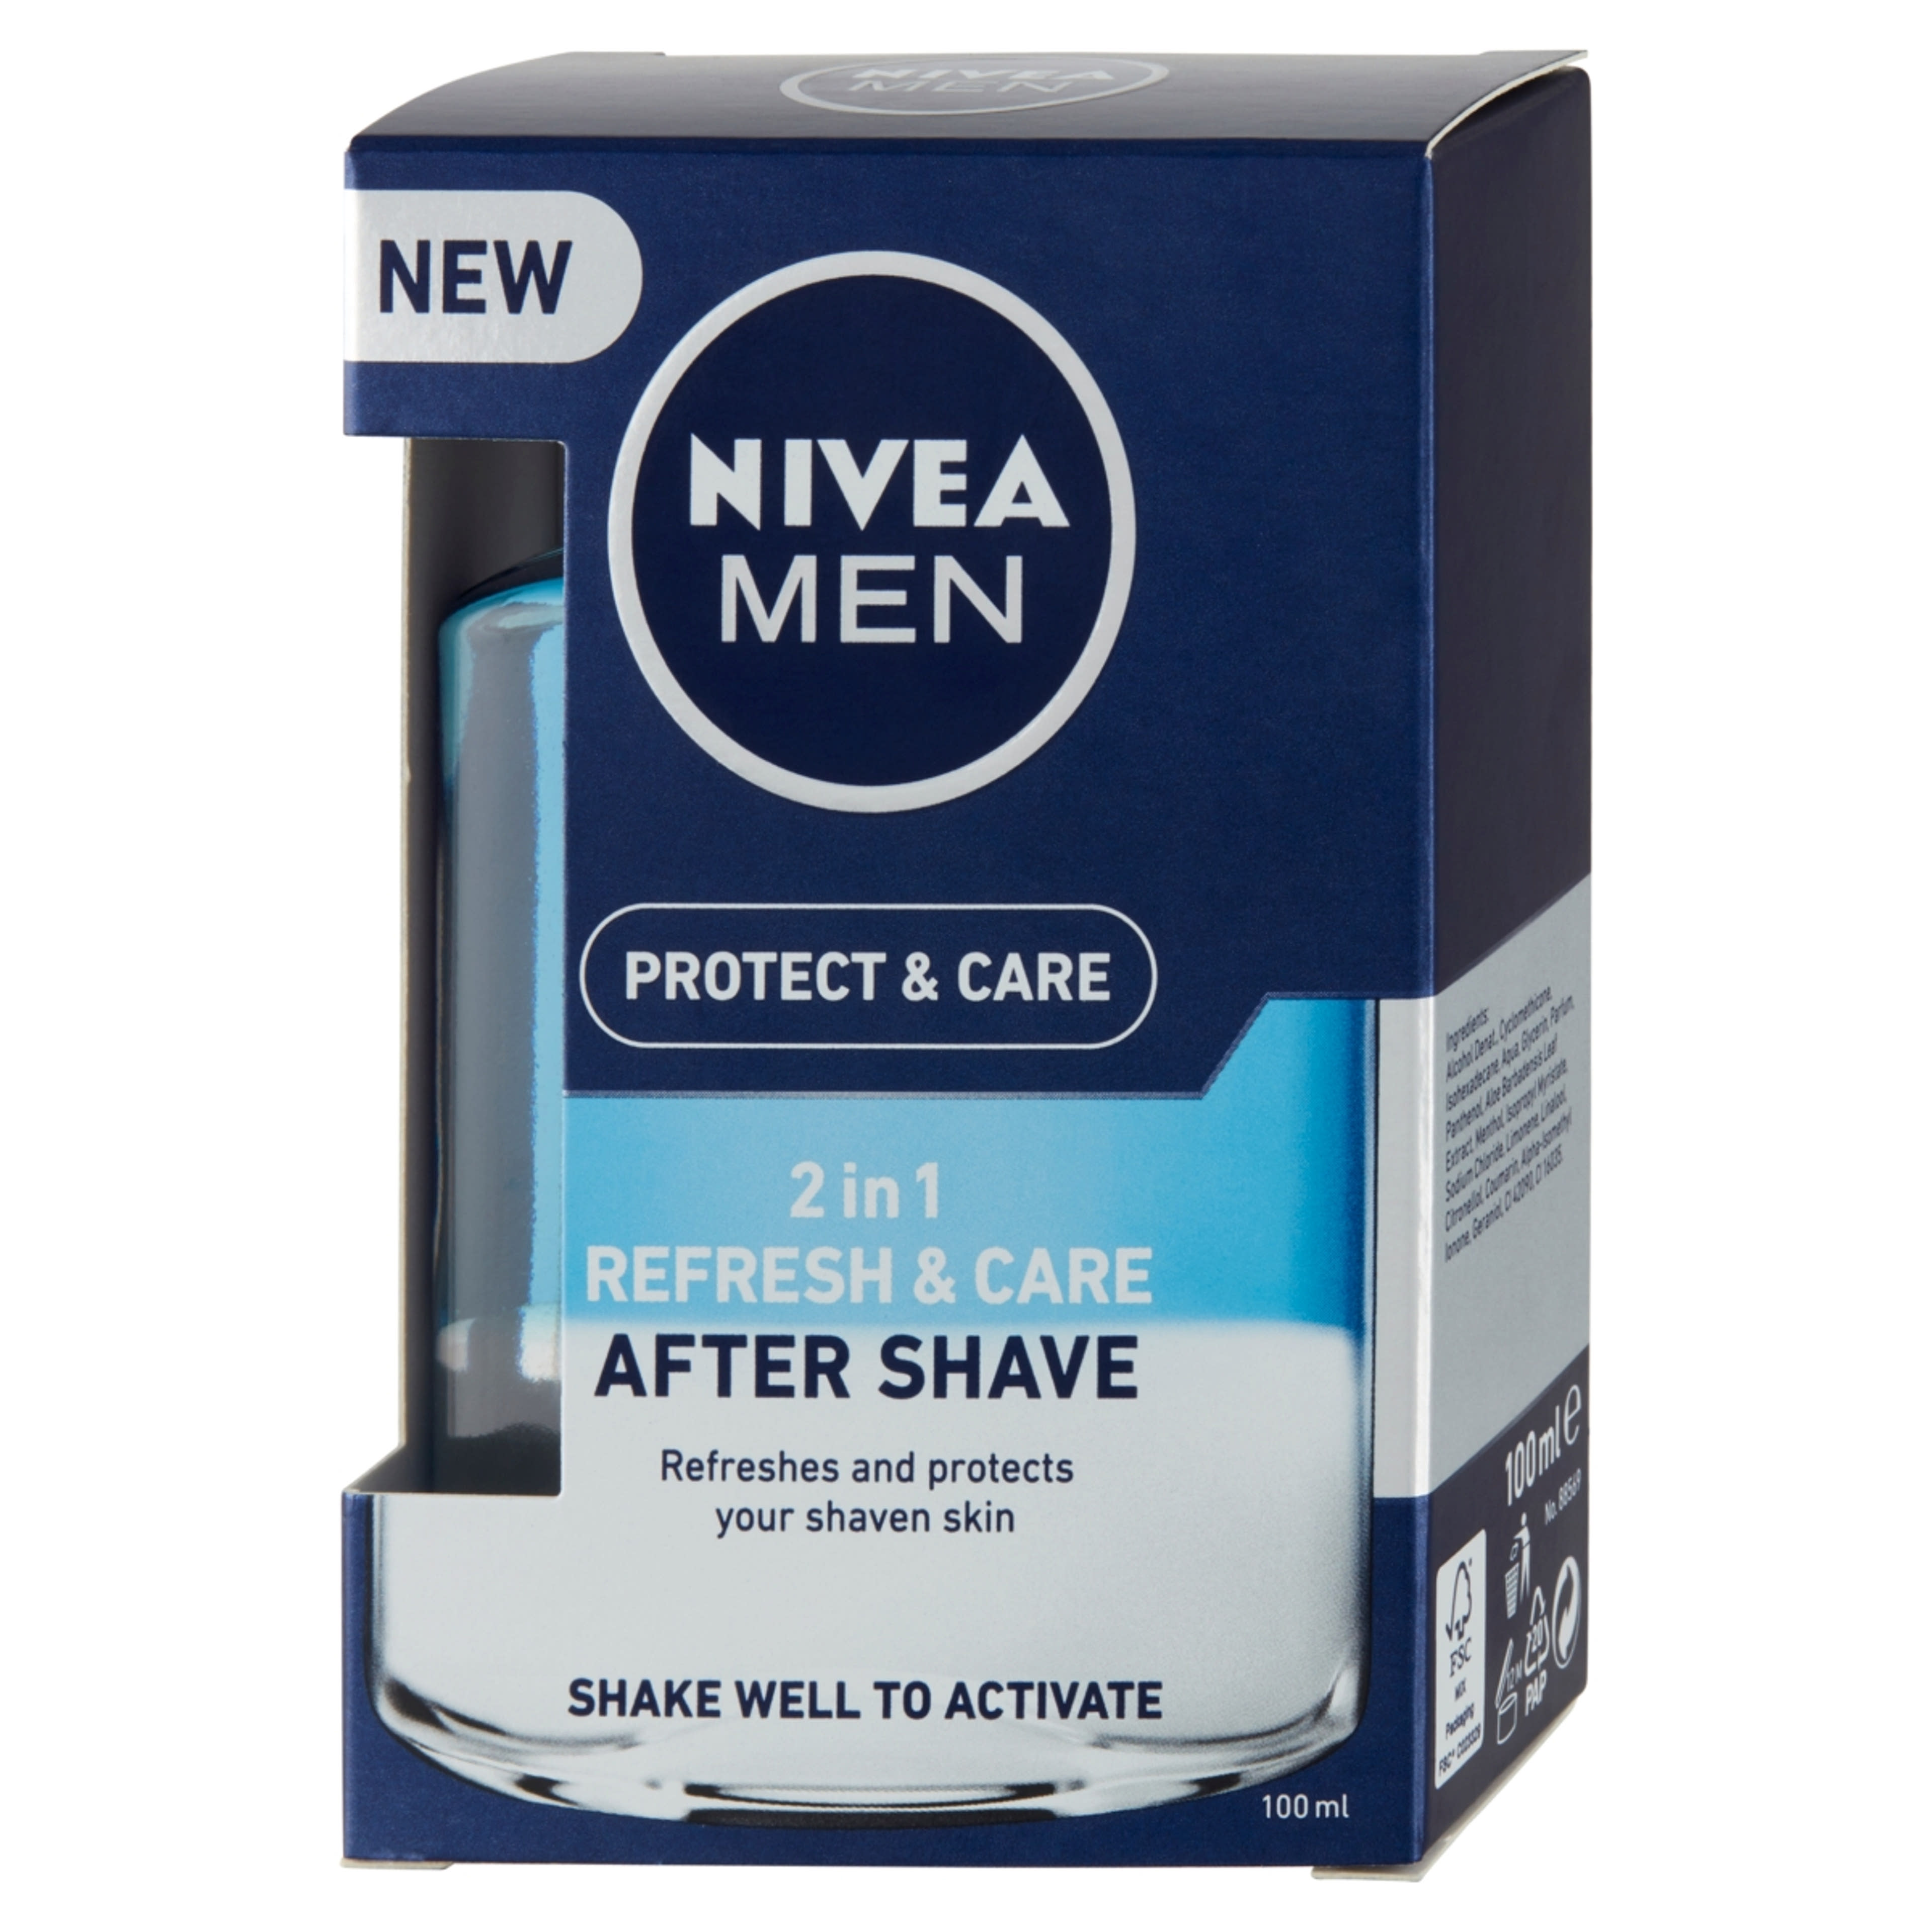 NIVEA MEN Protect & Care 2 in 1 Frissítő és Ápoló After Shave Lotion - 100 ml-3